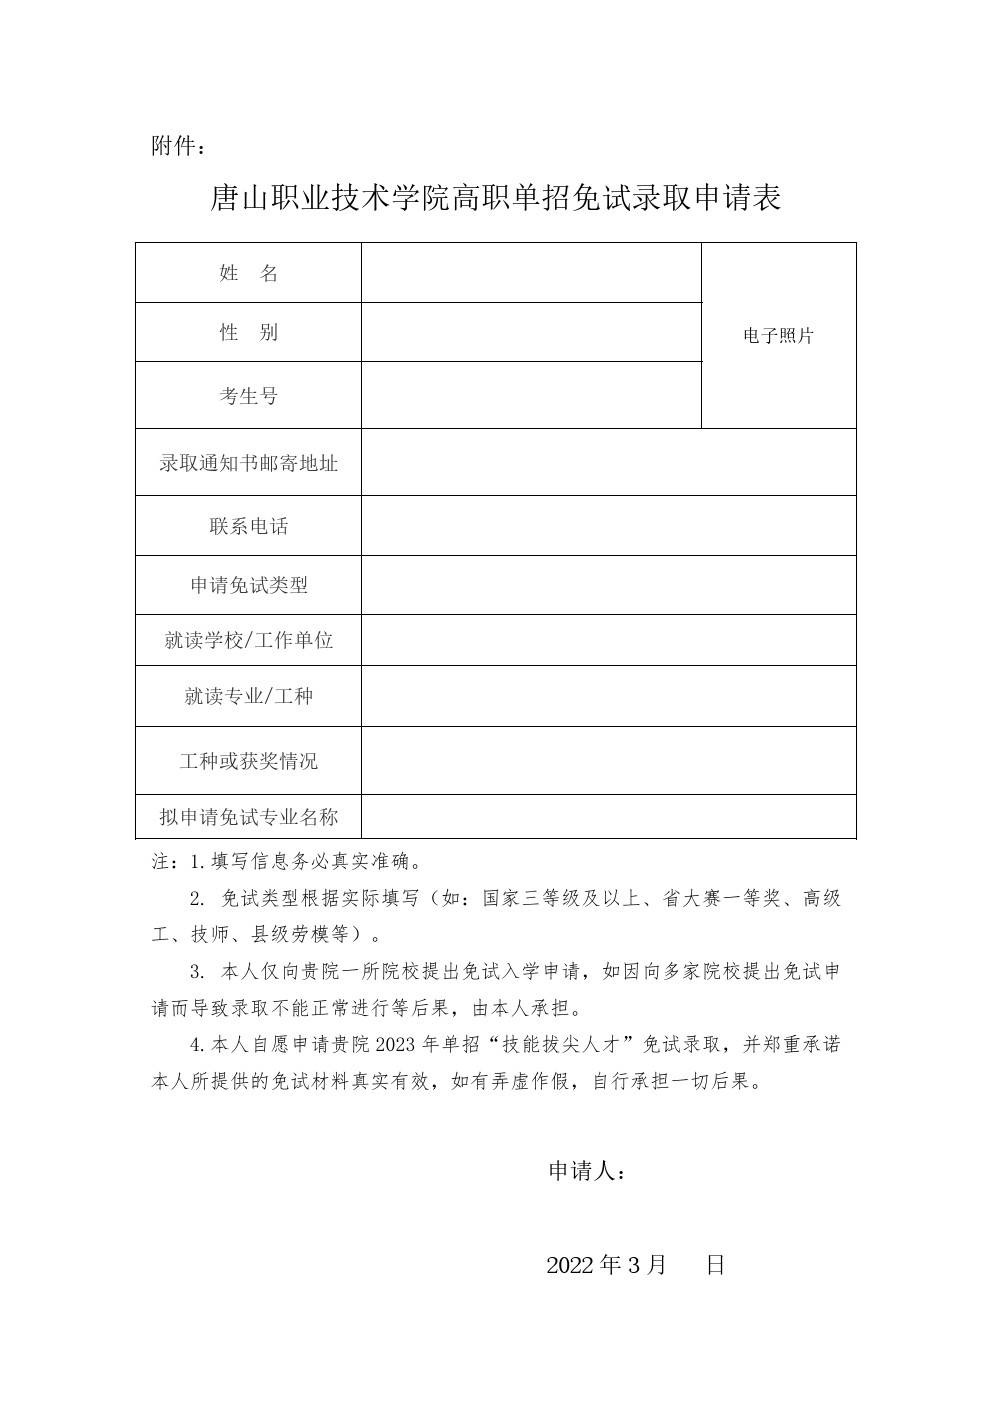 唐山职业技术学院关于2023年河北高职单招考试免试录取申请工作的通知